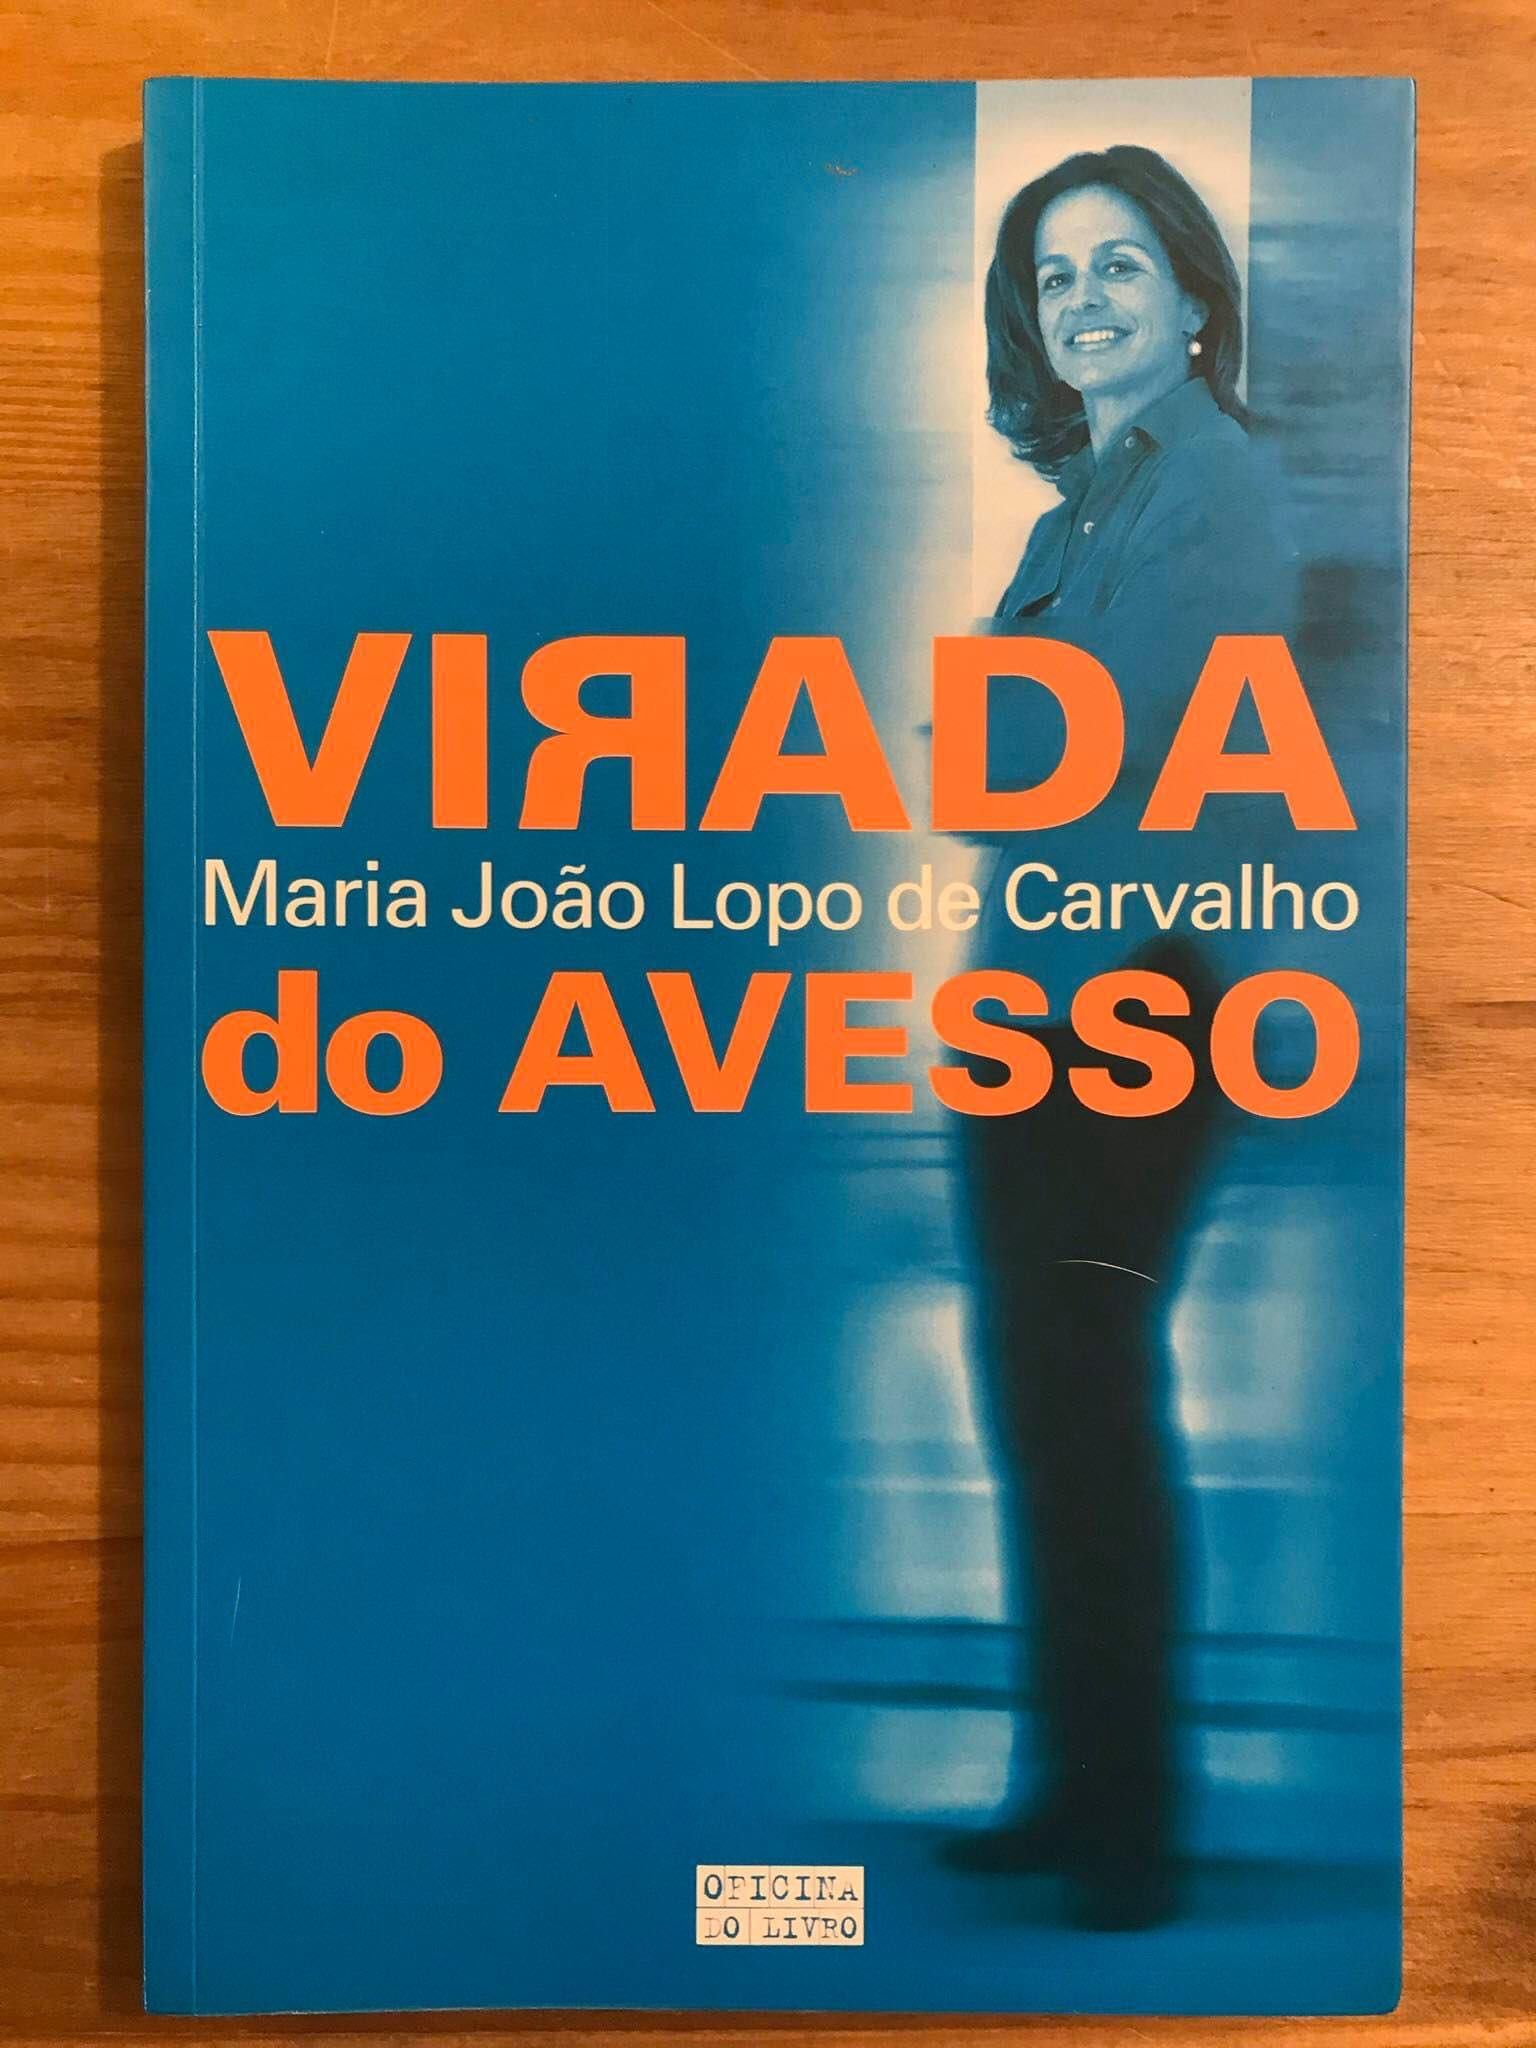 Virada do Avesso - Maria João Lopo de Carvalho (portes grátis)